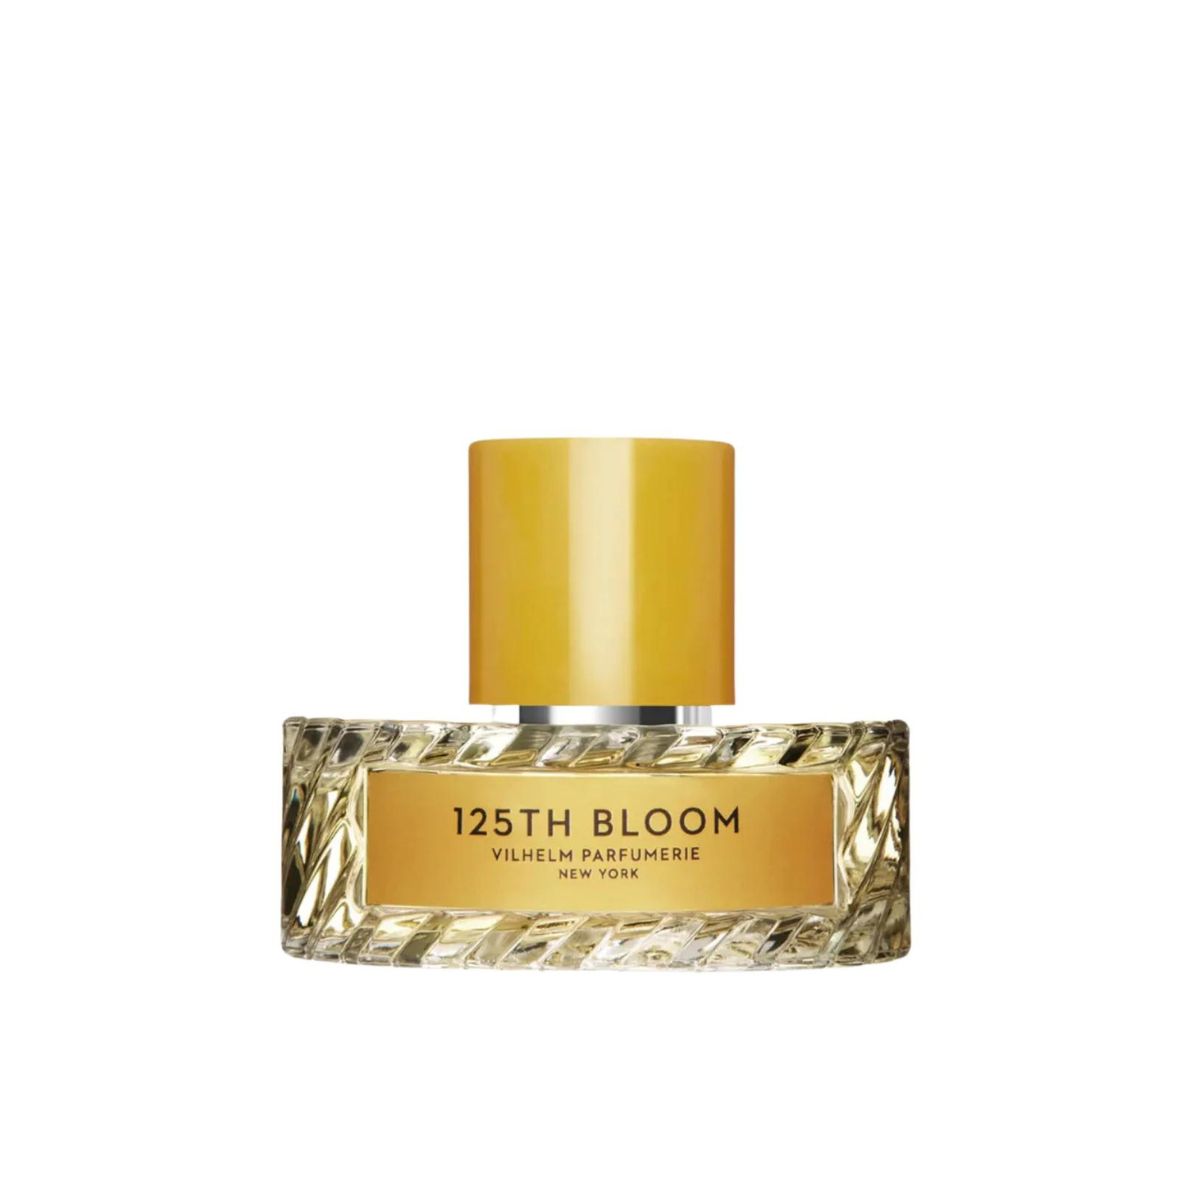 Vilhelm Parfumerie 125th & Bloom Perfume